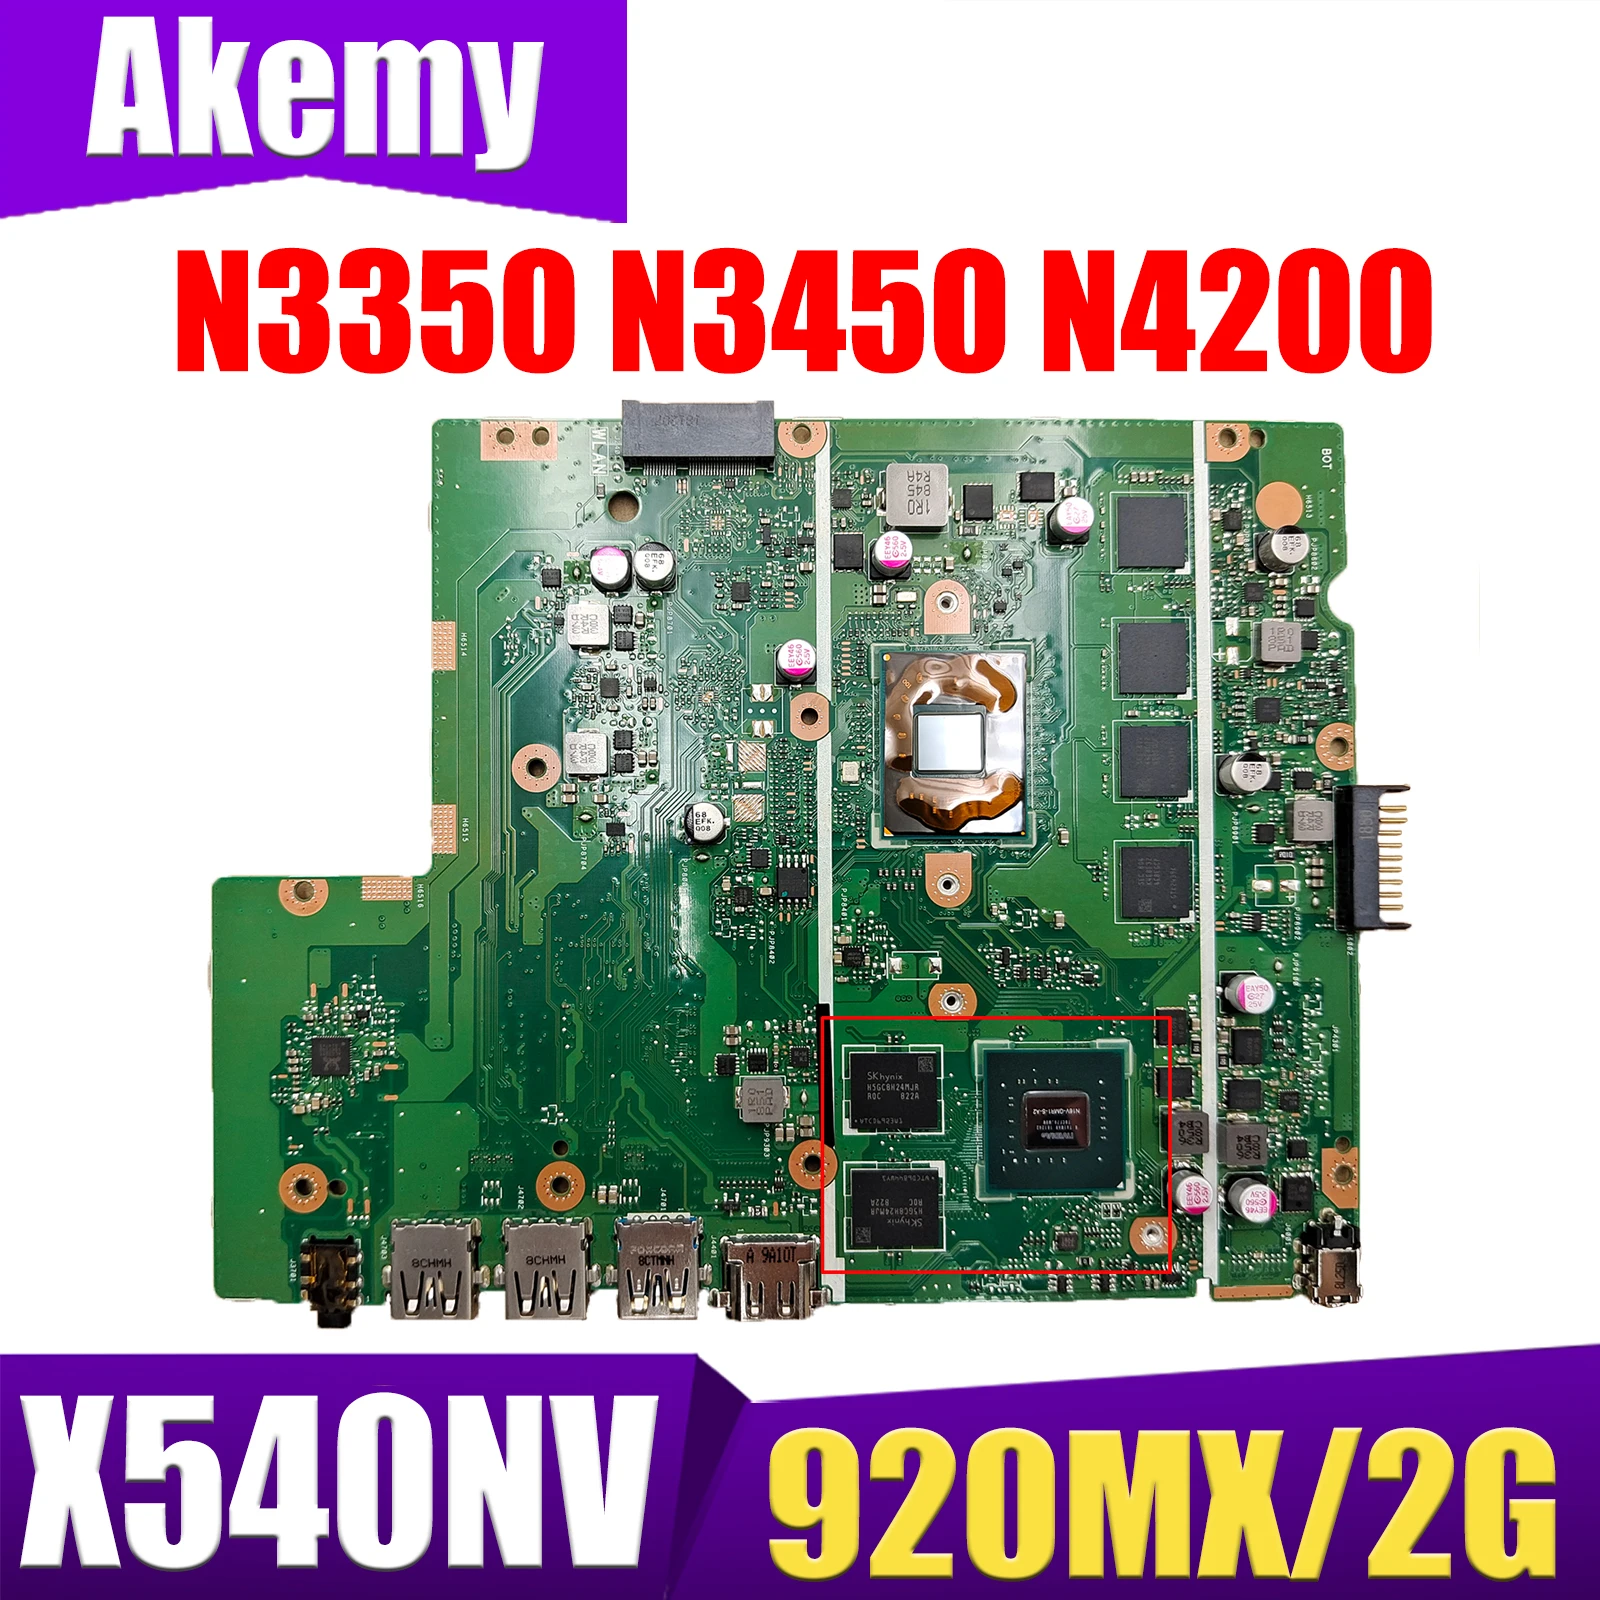   X540NV X540N D540NV F540NV A540NV R540NV X580NV     N3350/N3450 N4200 920MX/V2G RAM-4GB